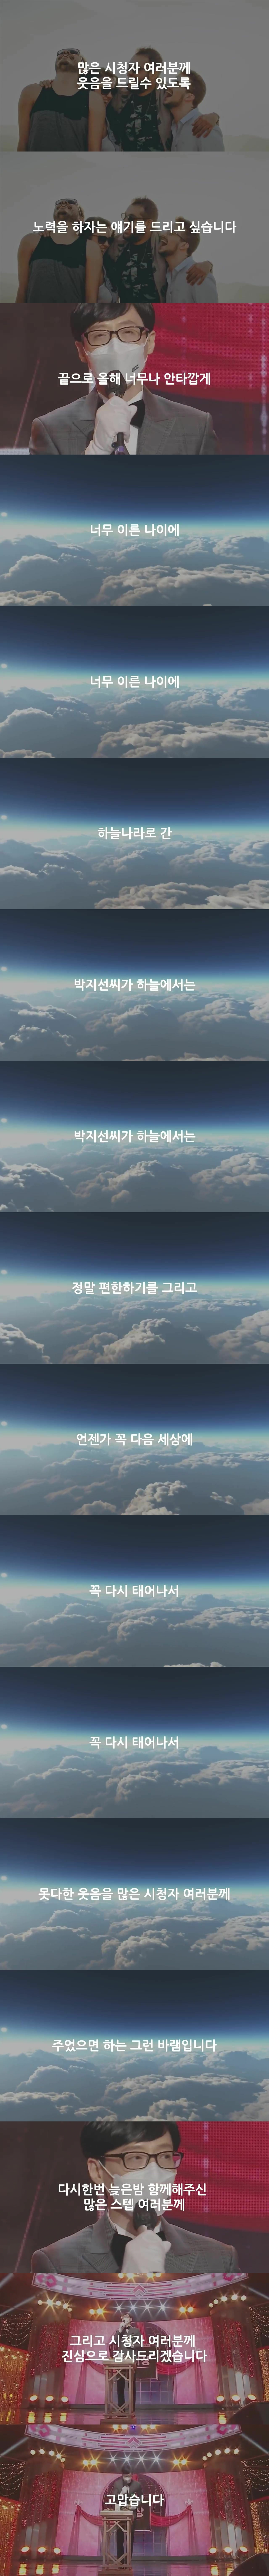 유재석 MBC 연예대상 수상소감